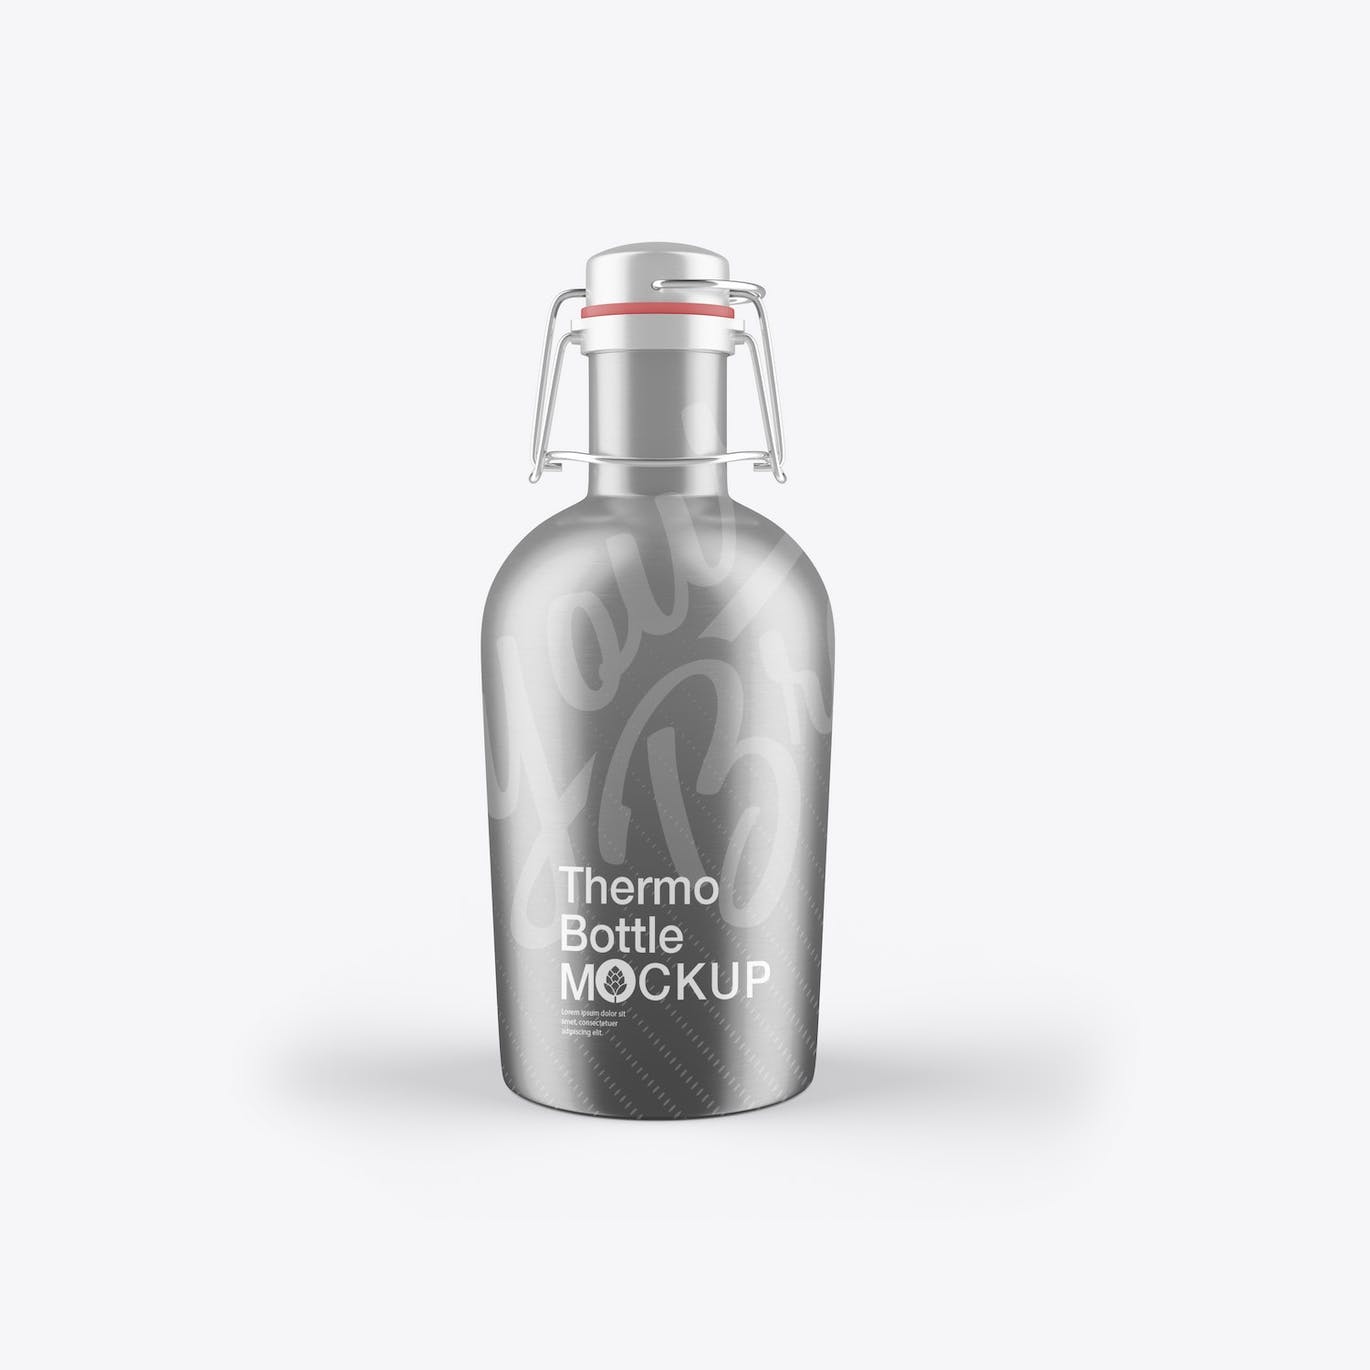 金属热水瓶包装设计样机 Thermo Bottle Mockup 样机素材 第7张